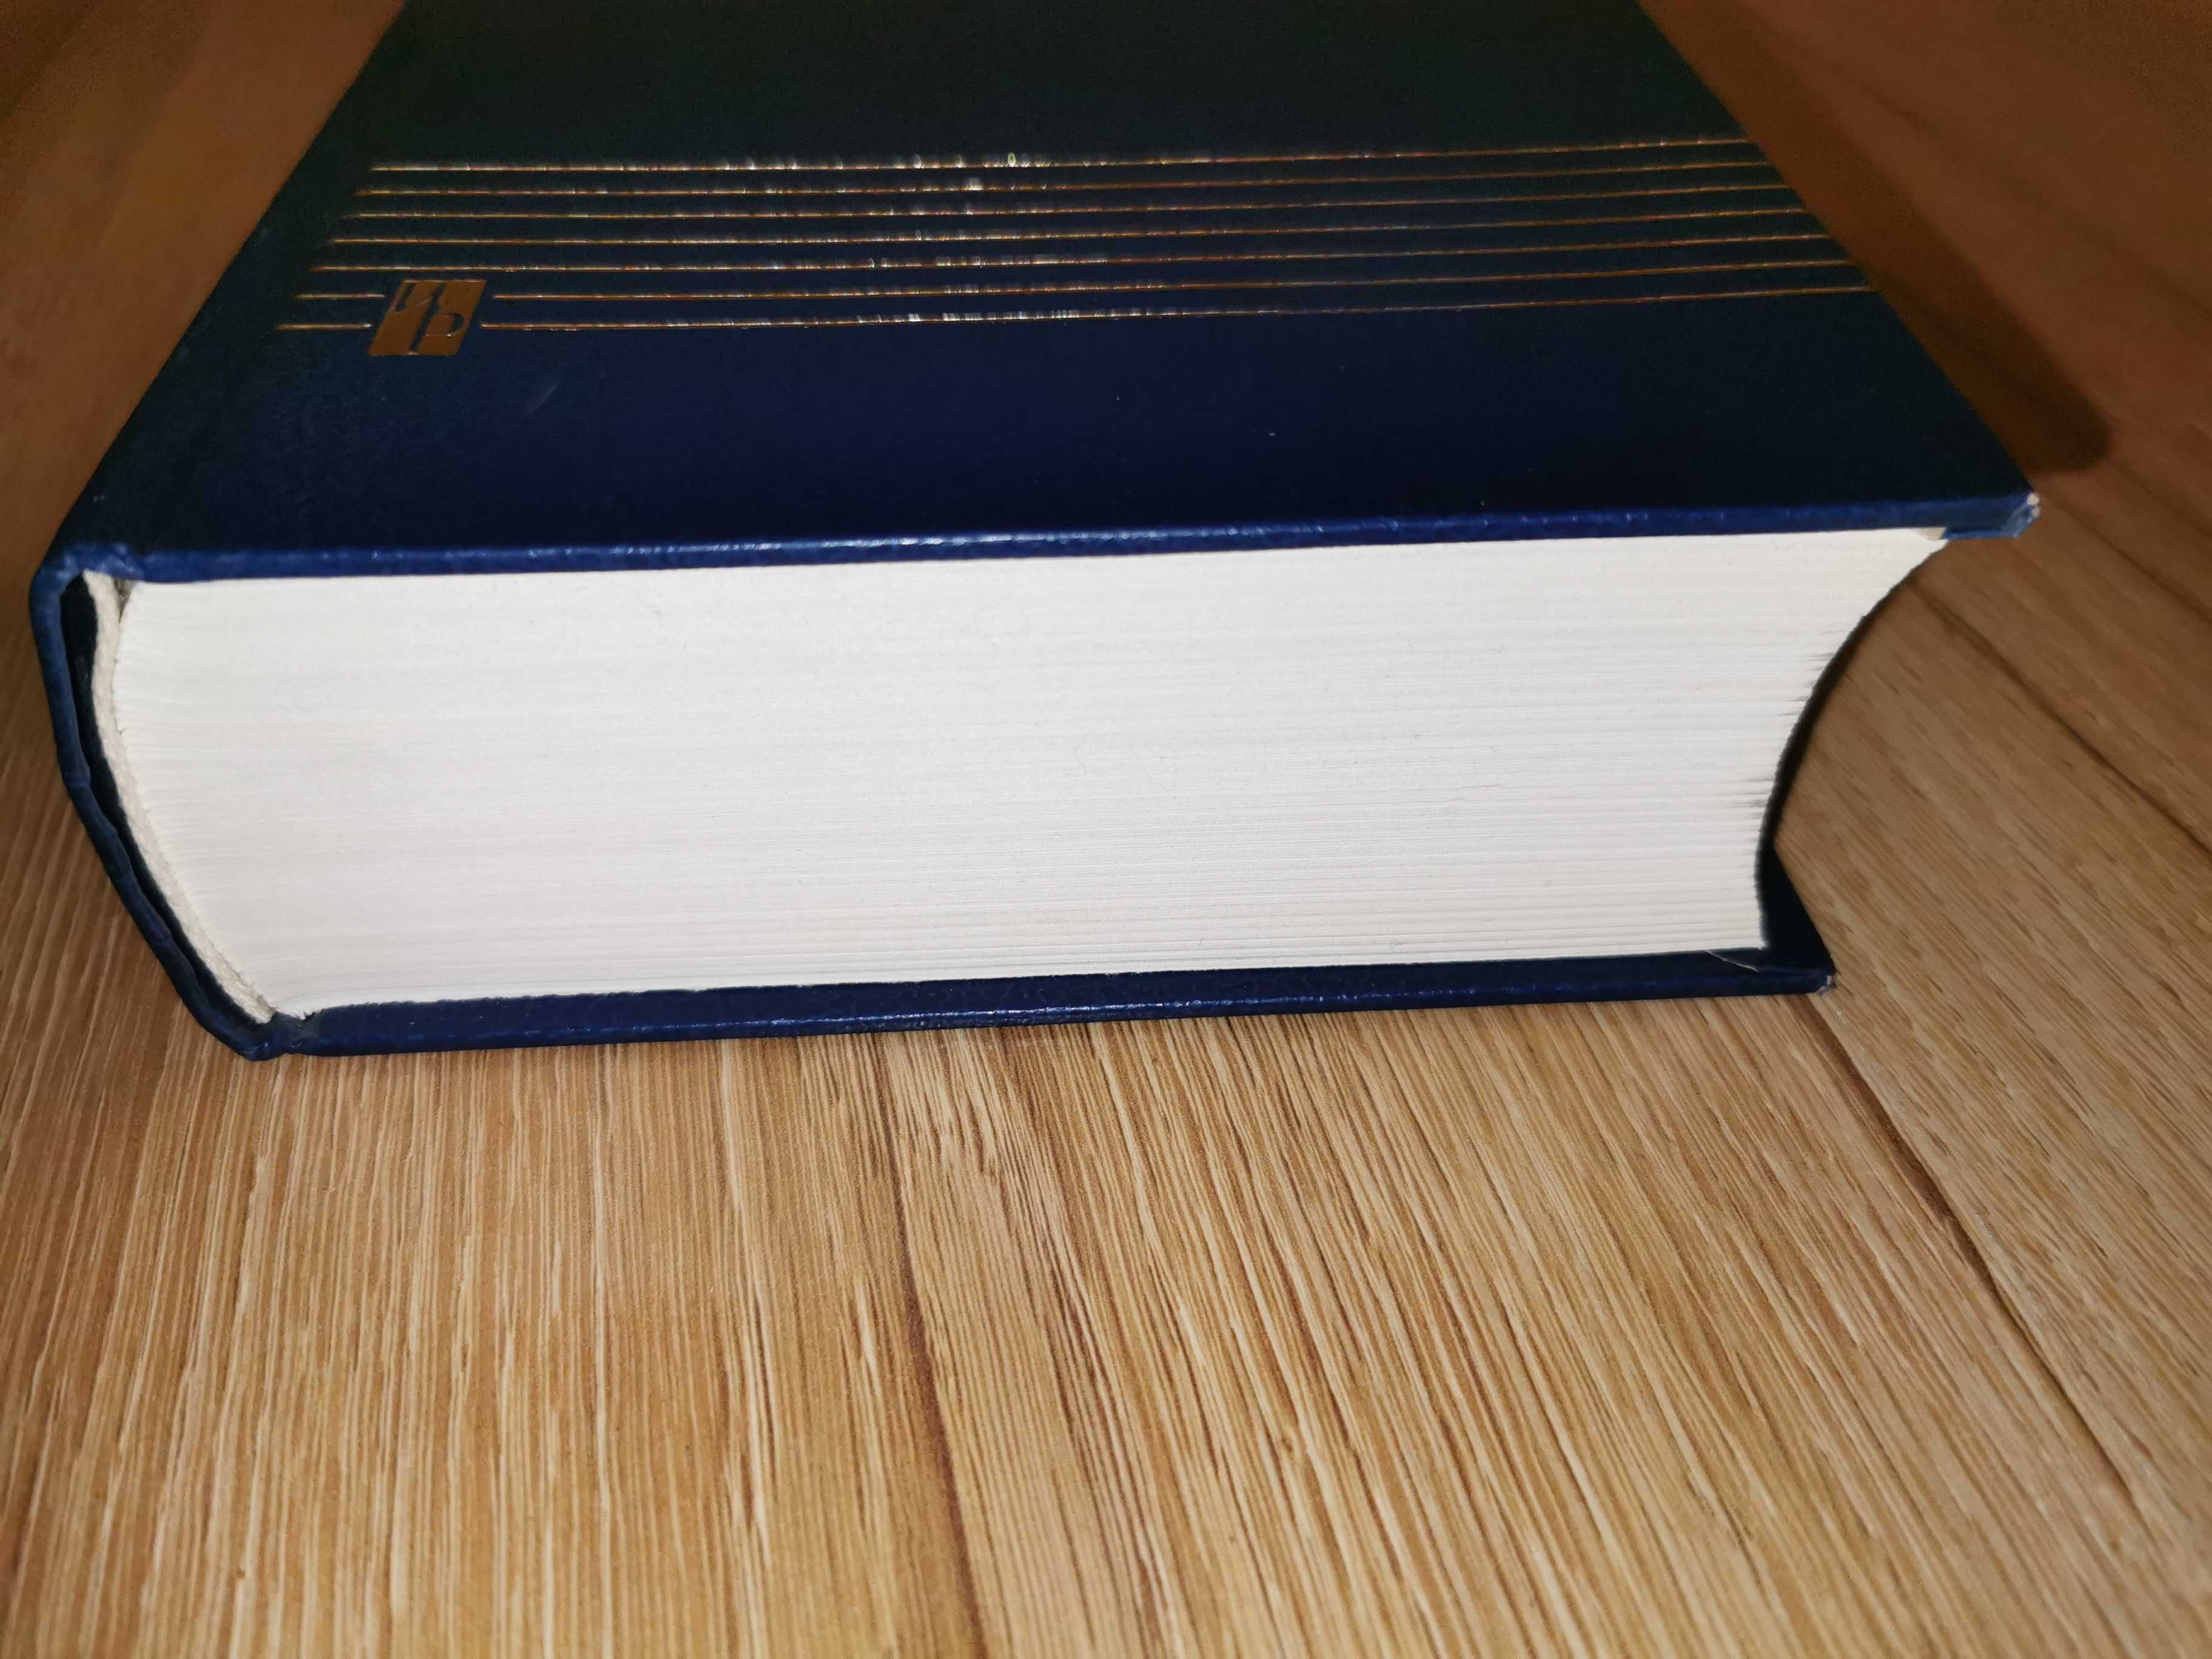 Bardzo gruby słownik francusko-polski ponad 1000 stron